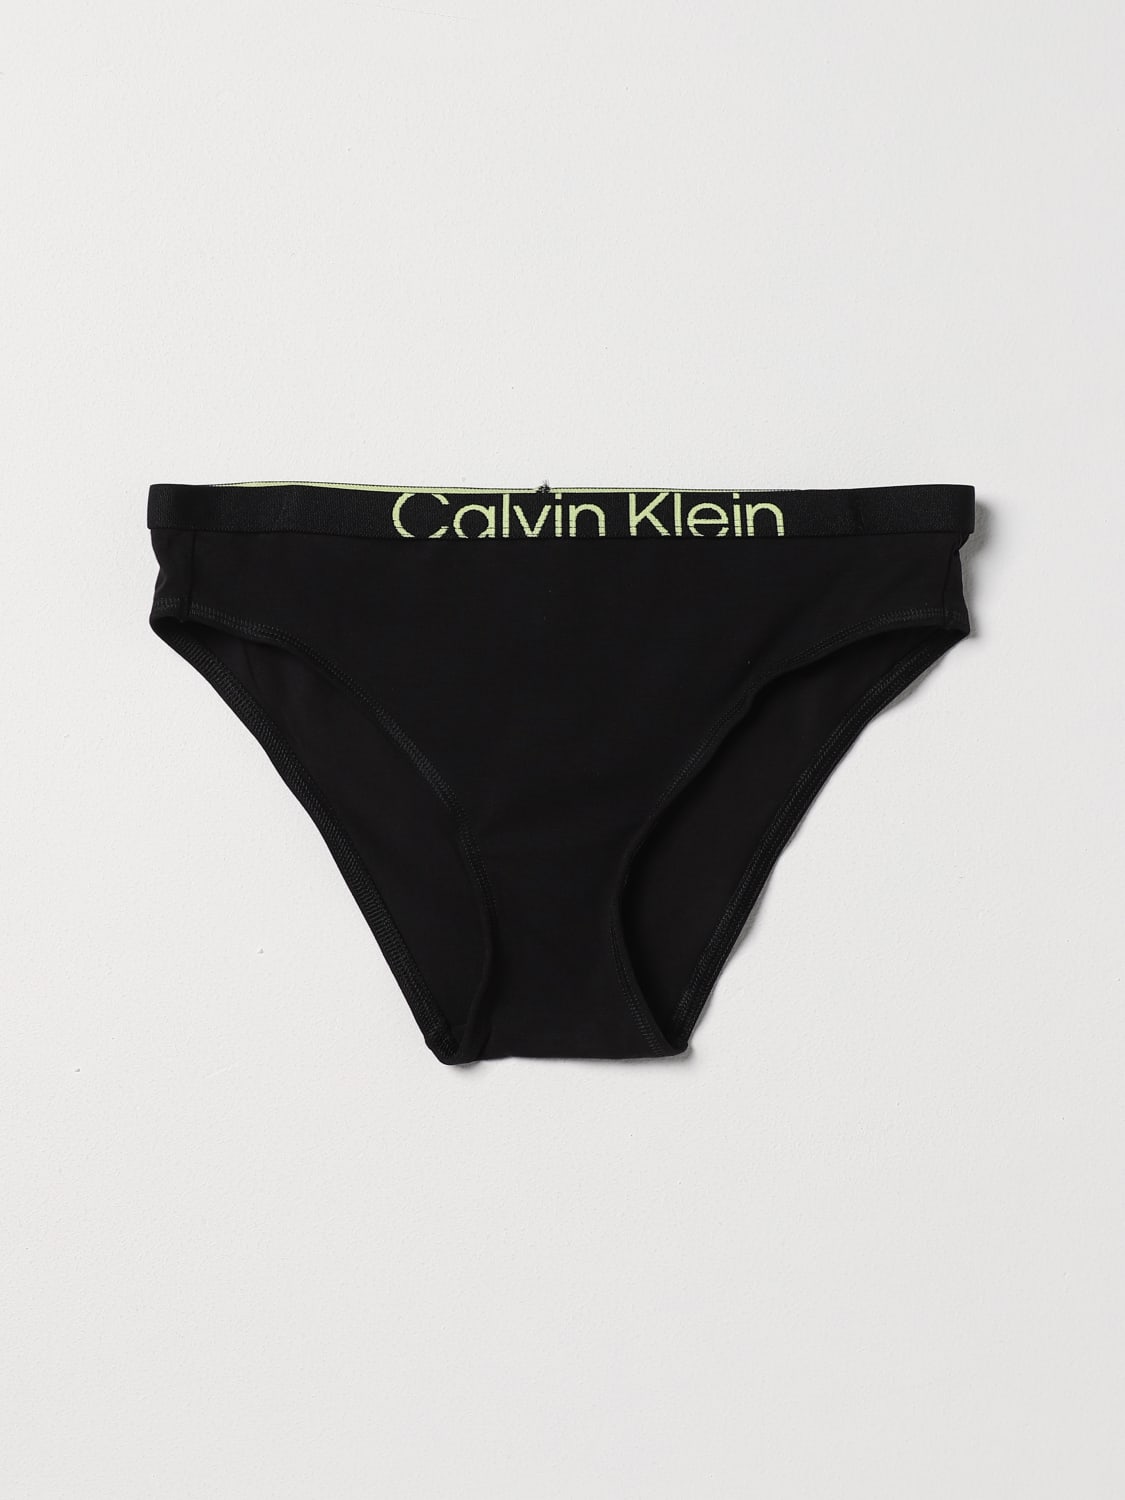 CALVIN KLEIN UNDERWEAR: Dessous damen Ck Underwear - Schwarz